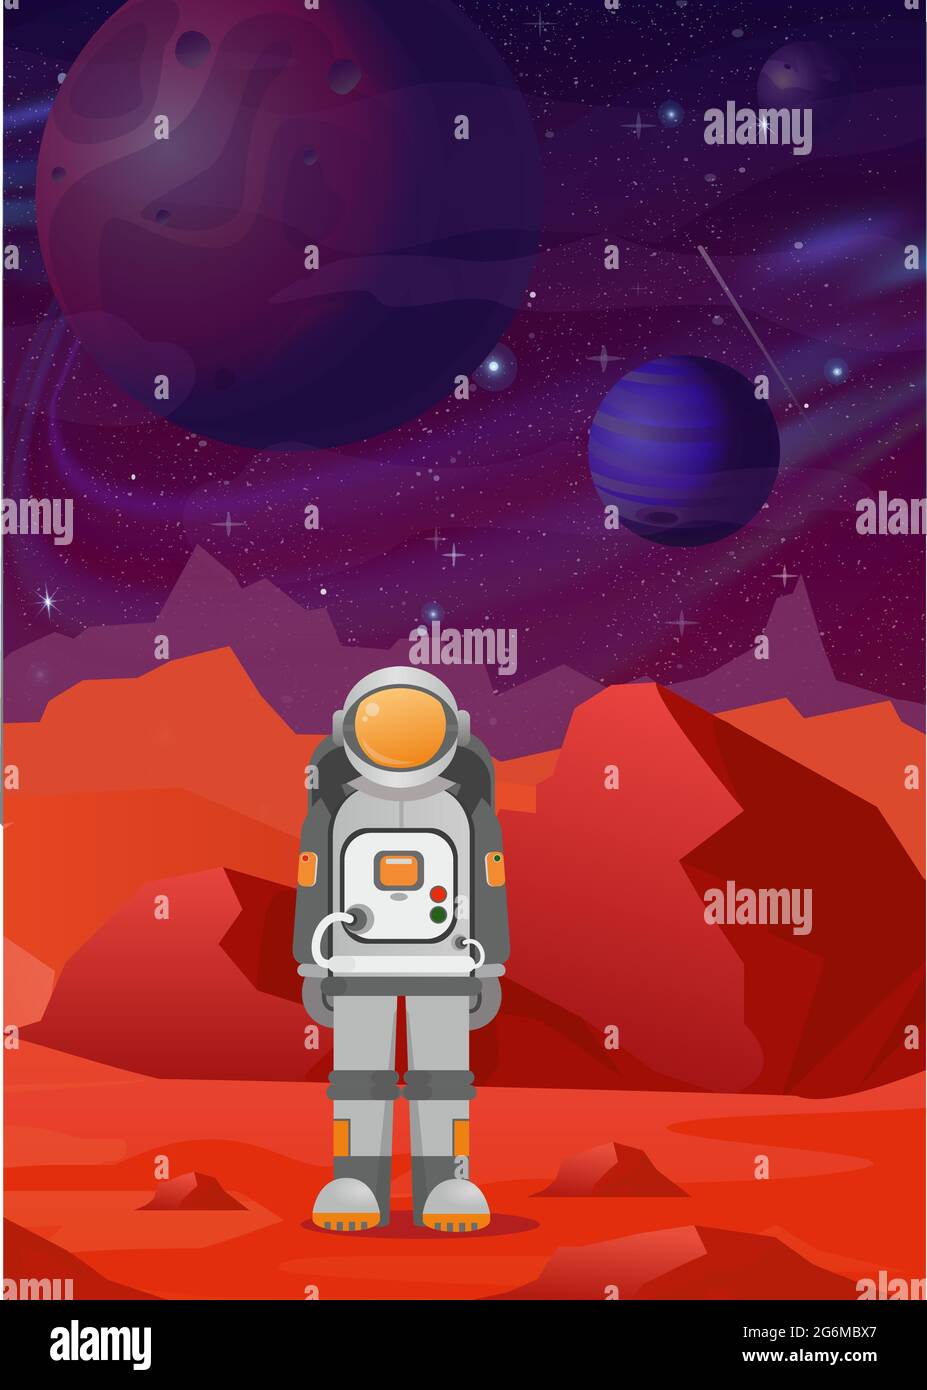 Ilustraciones vectoriales del astronauta en Marte. Paisaje de las montañas rojas en el espacio oscuro con fondo de planetas. astronomía, exploración espacial, colonización Ilustración del Vector